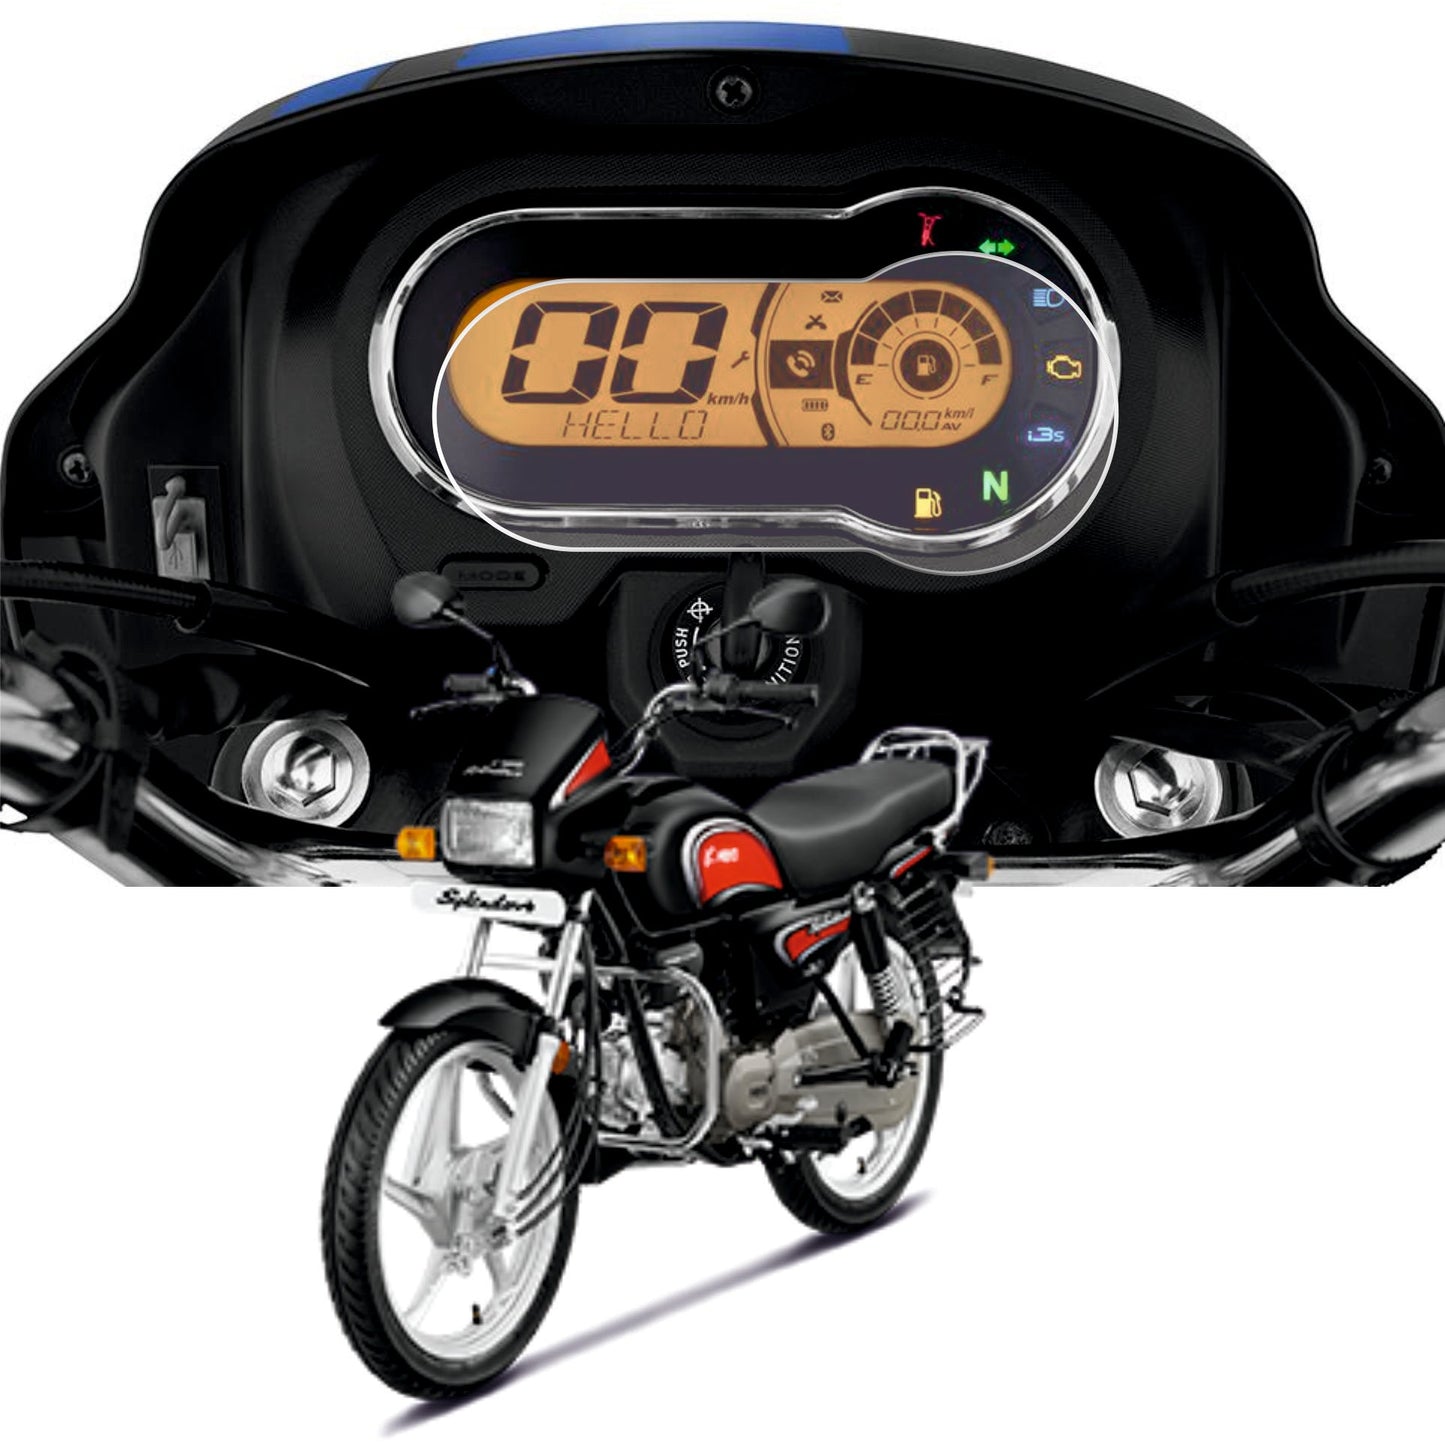 Hero Splender Plus Xtec Bs6 Accessories Speedometer Screen Guard -XTEC_BS6_MA